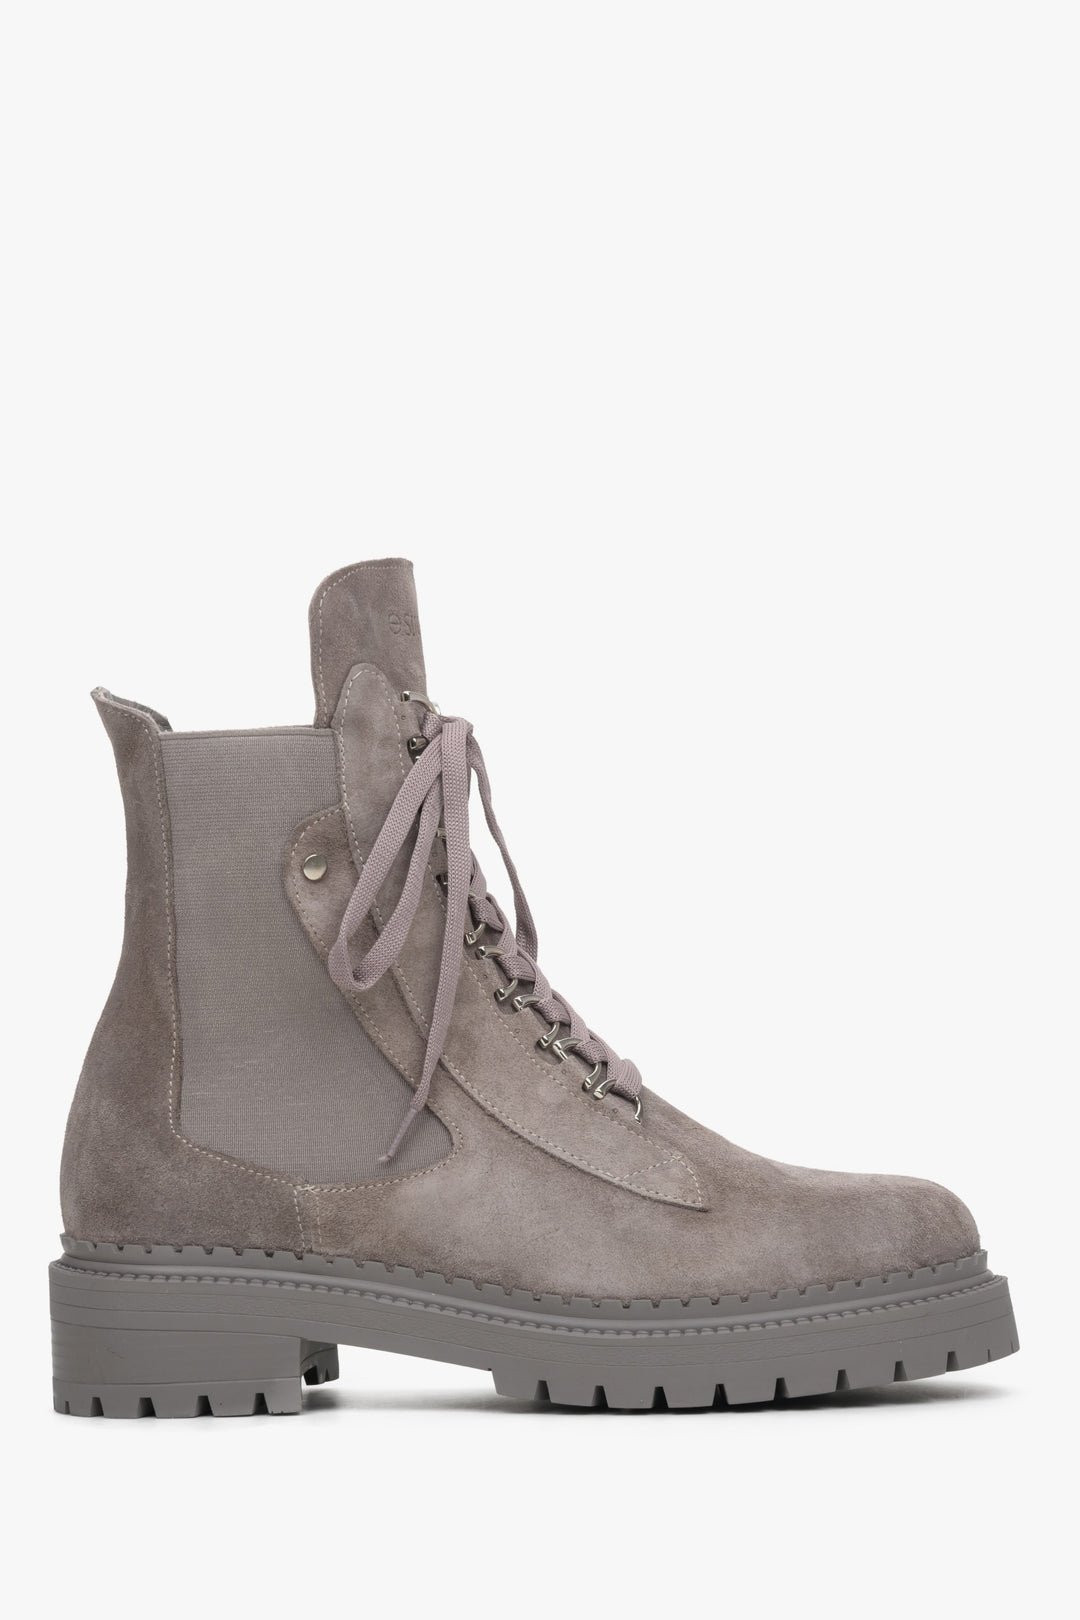 Women's grey ankle boots Estro - shoe profile.